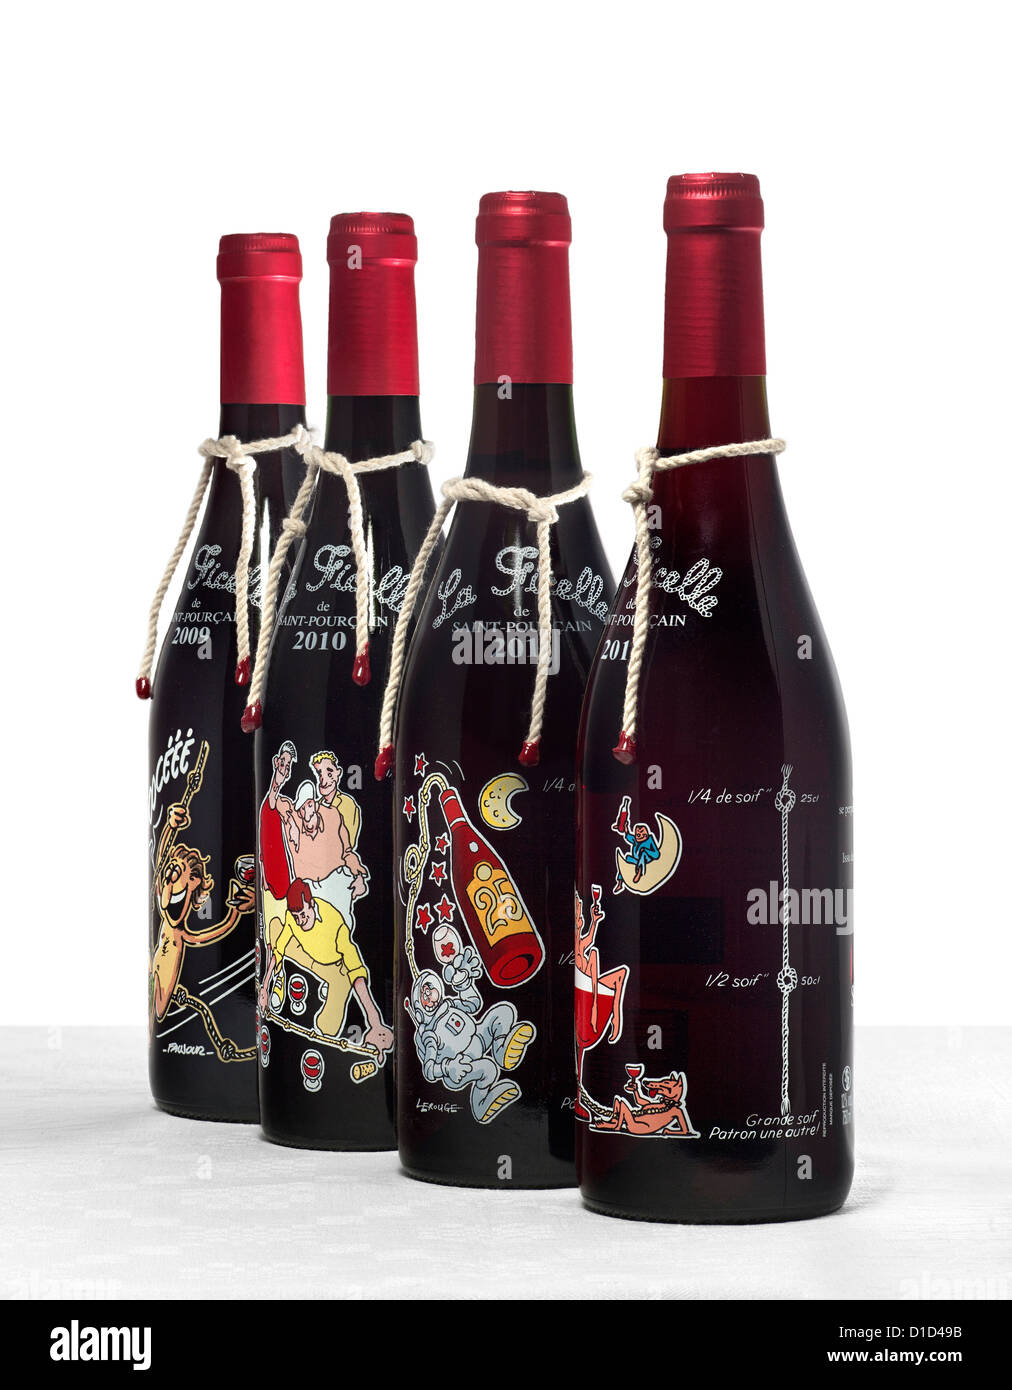 Saint Pourçain bottiglie del nouveau vino rosso il cui nome è "stringa". Bouteilles de vin rouge primeur de St Pourçain. Foto Stock